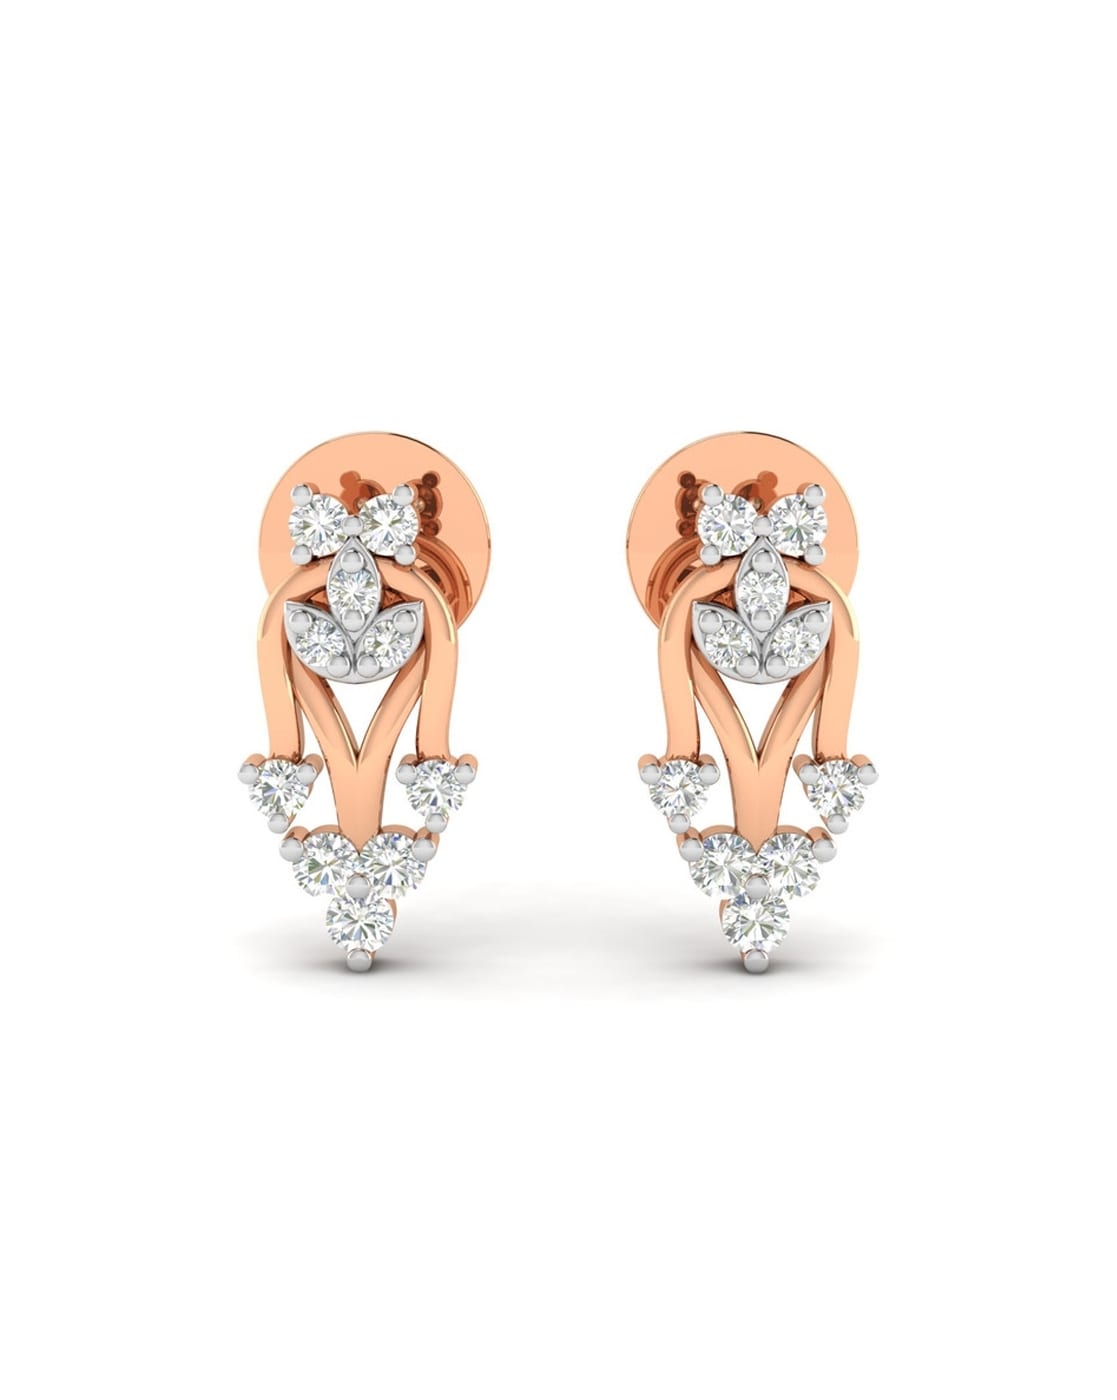 050ct Solitaire Earrings in Lab Grown DiamondsSmiling Rocks